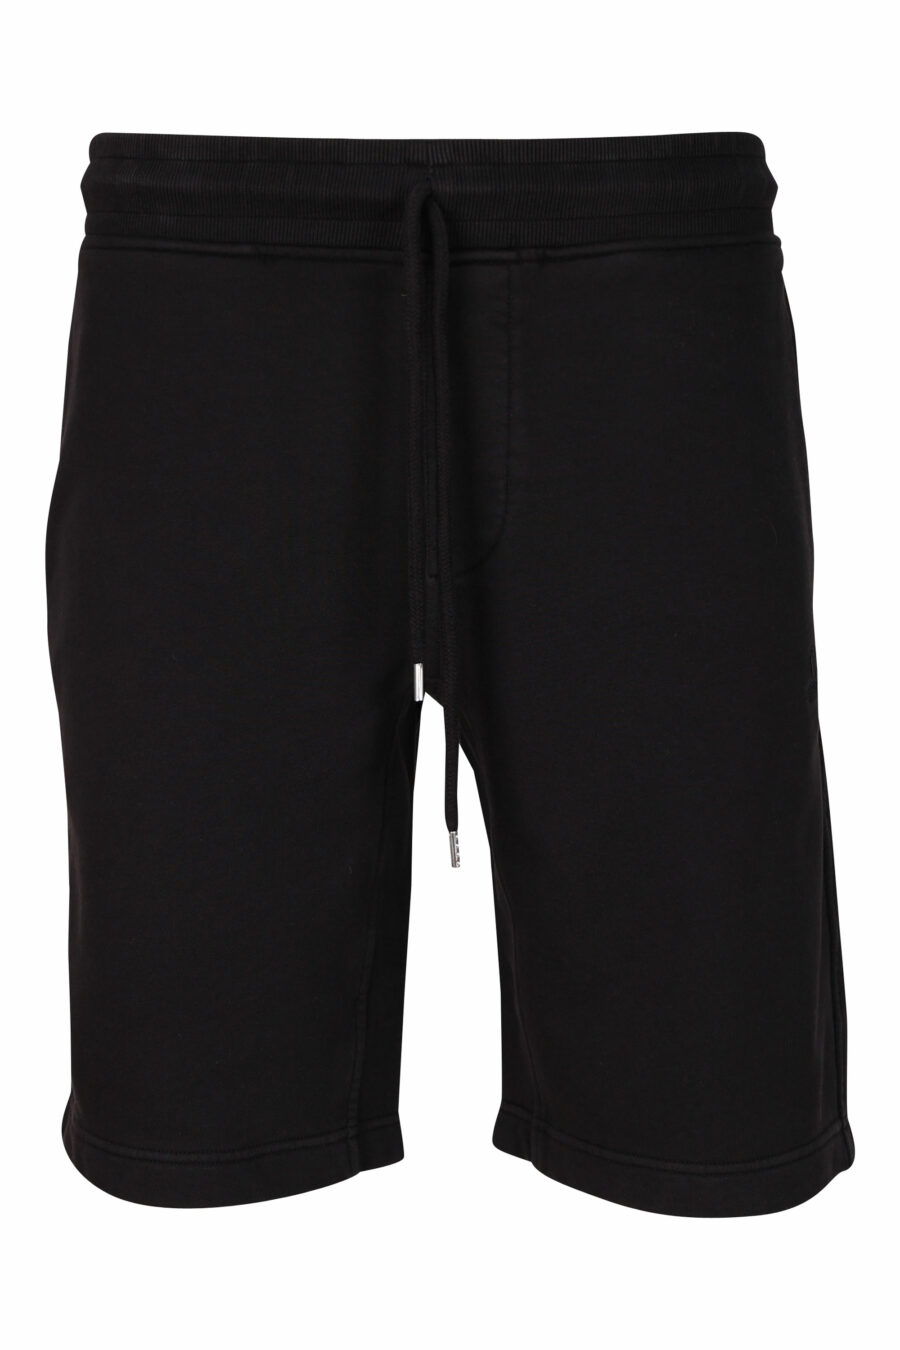 Pantalón de chándal negro con minilogo bordado monocromático - 7620943731828